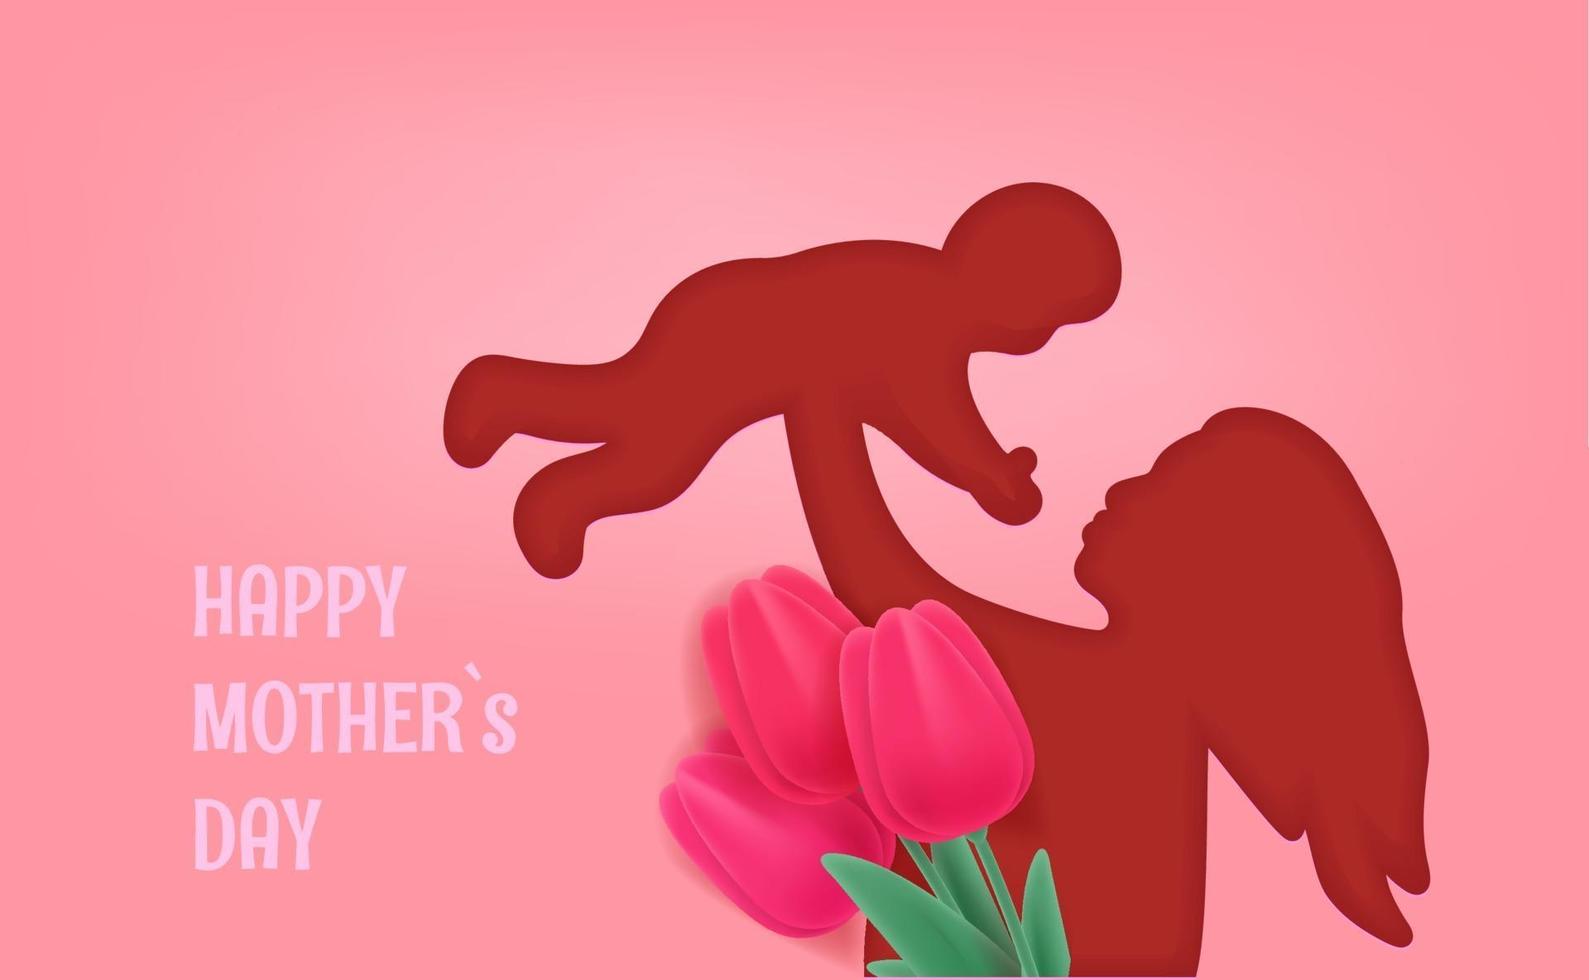 mujer sosteniendo un bebé. banner de vector de feliz día de la madre. efecto de corte con silueta de mujer